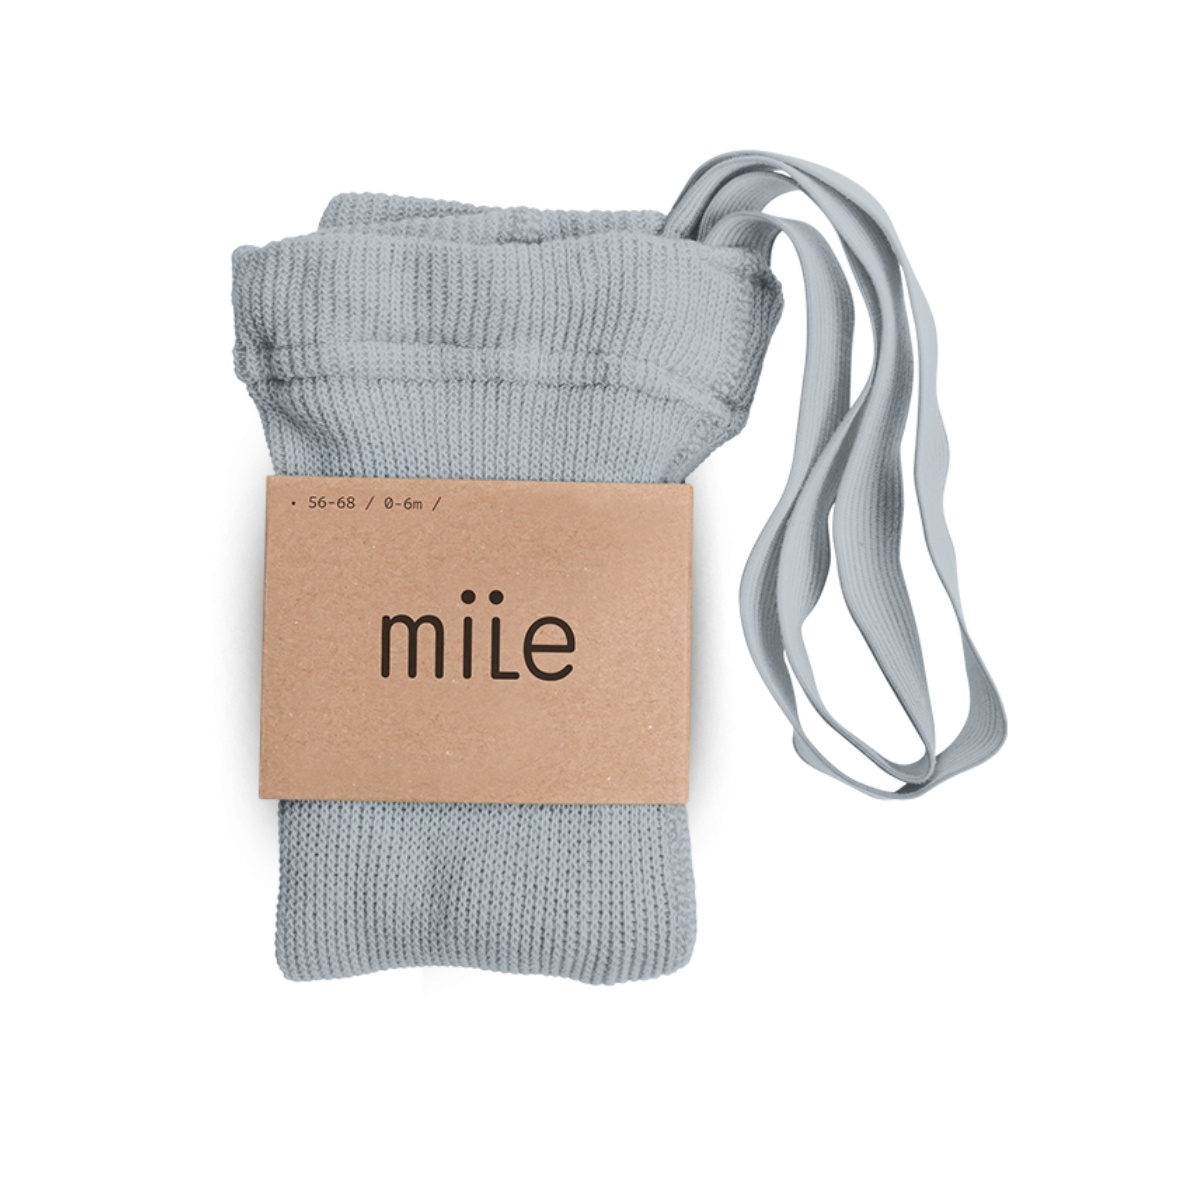 Mile - Cotton tights with braces grey - Collants et chaussettes